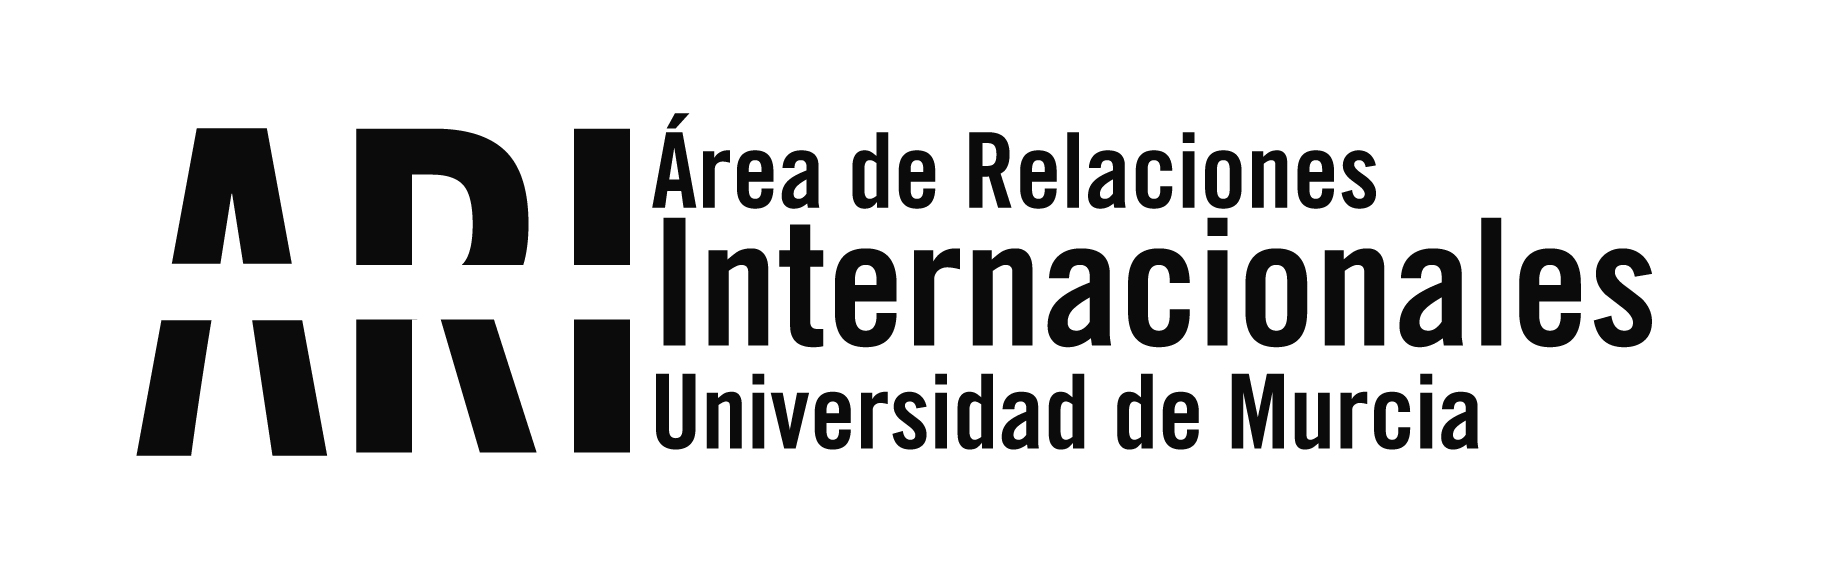 Reunión de Internacionalización con las Direcciones Generales de Universidades y de Unión Europea - Área de Relaciones Internacionales